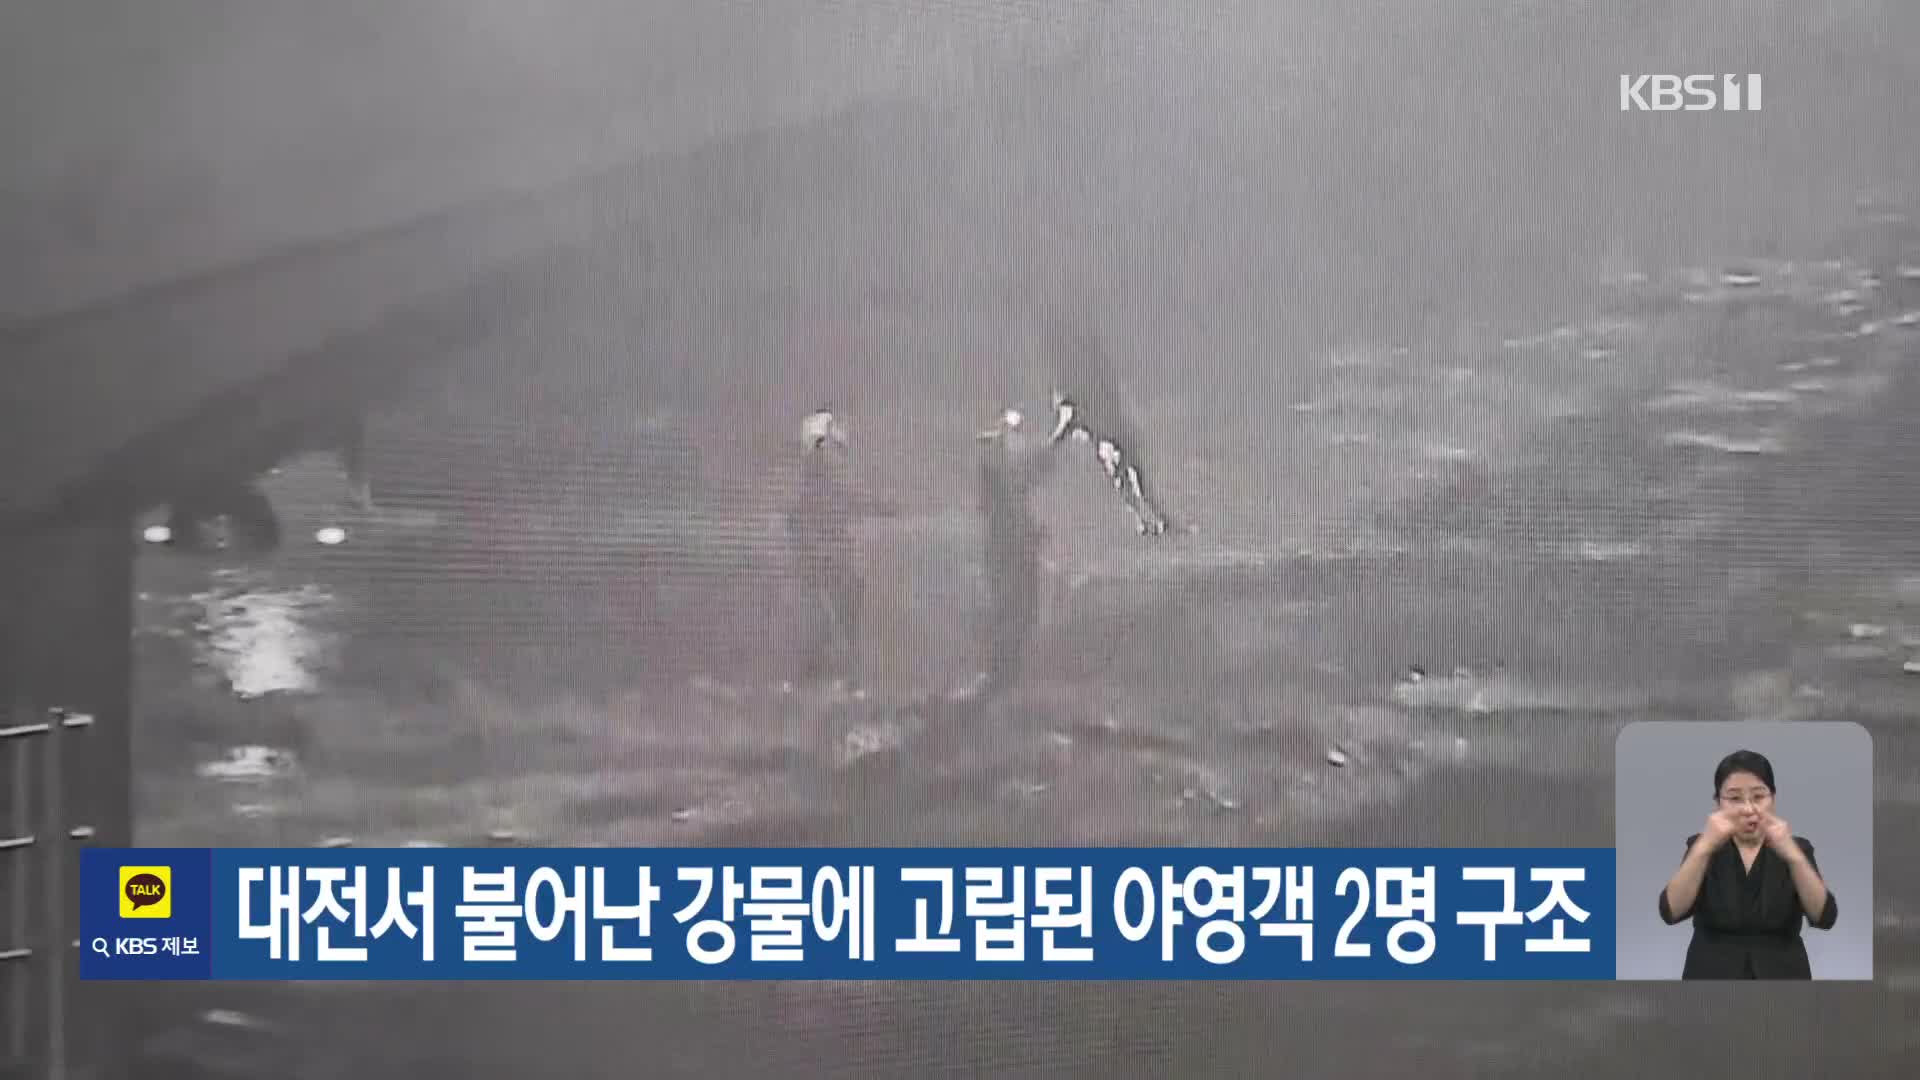 대전서 불어난 강물에 고립된 야영객 2명 구조